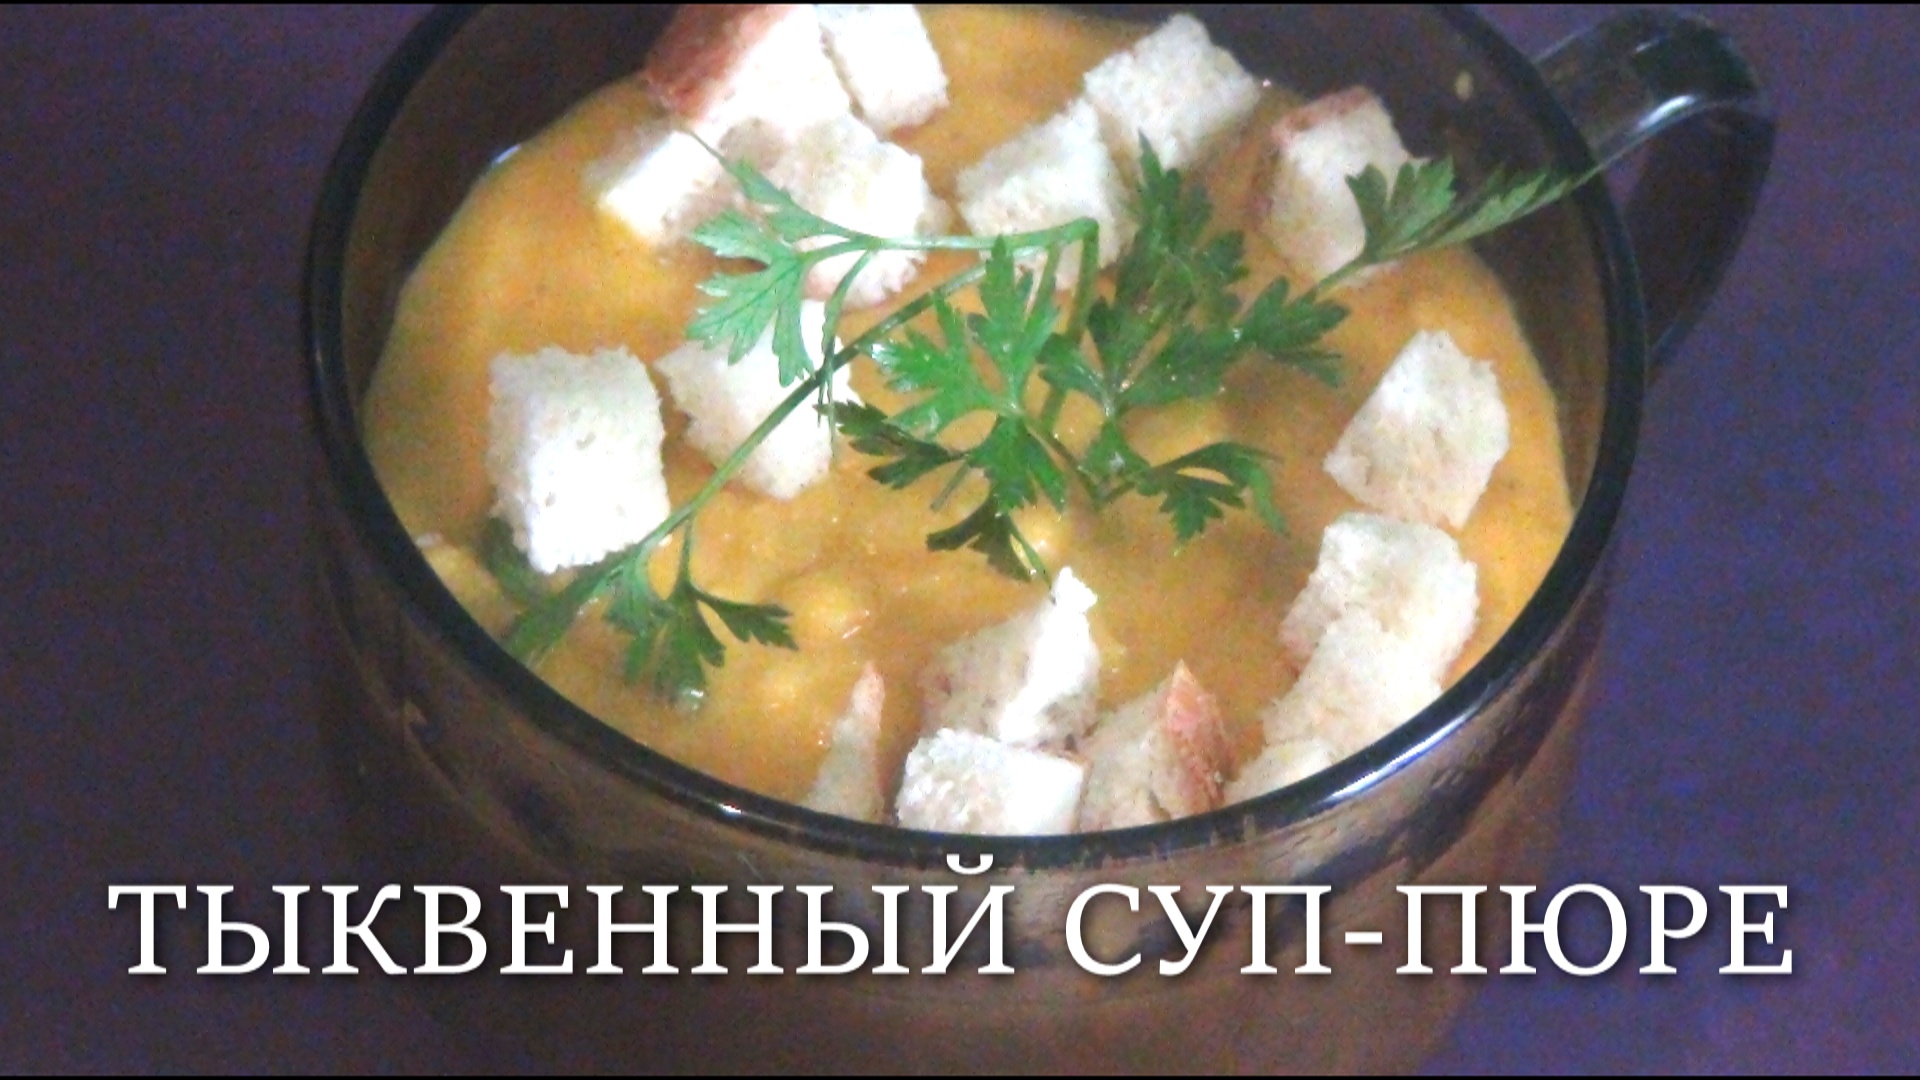 Тыквенный сливочный суп-пюре.mp4